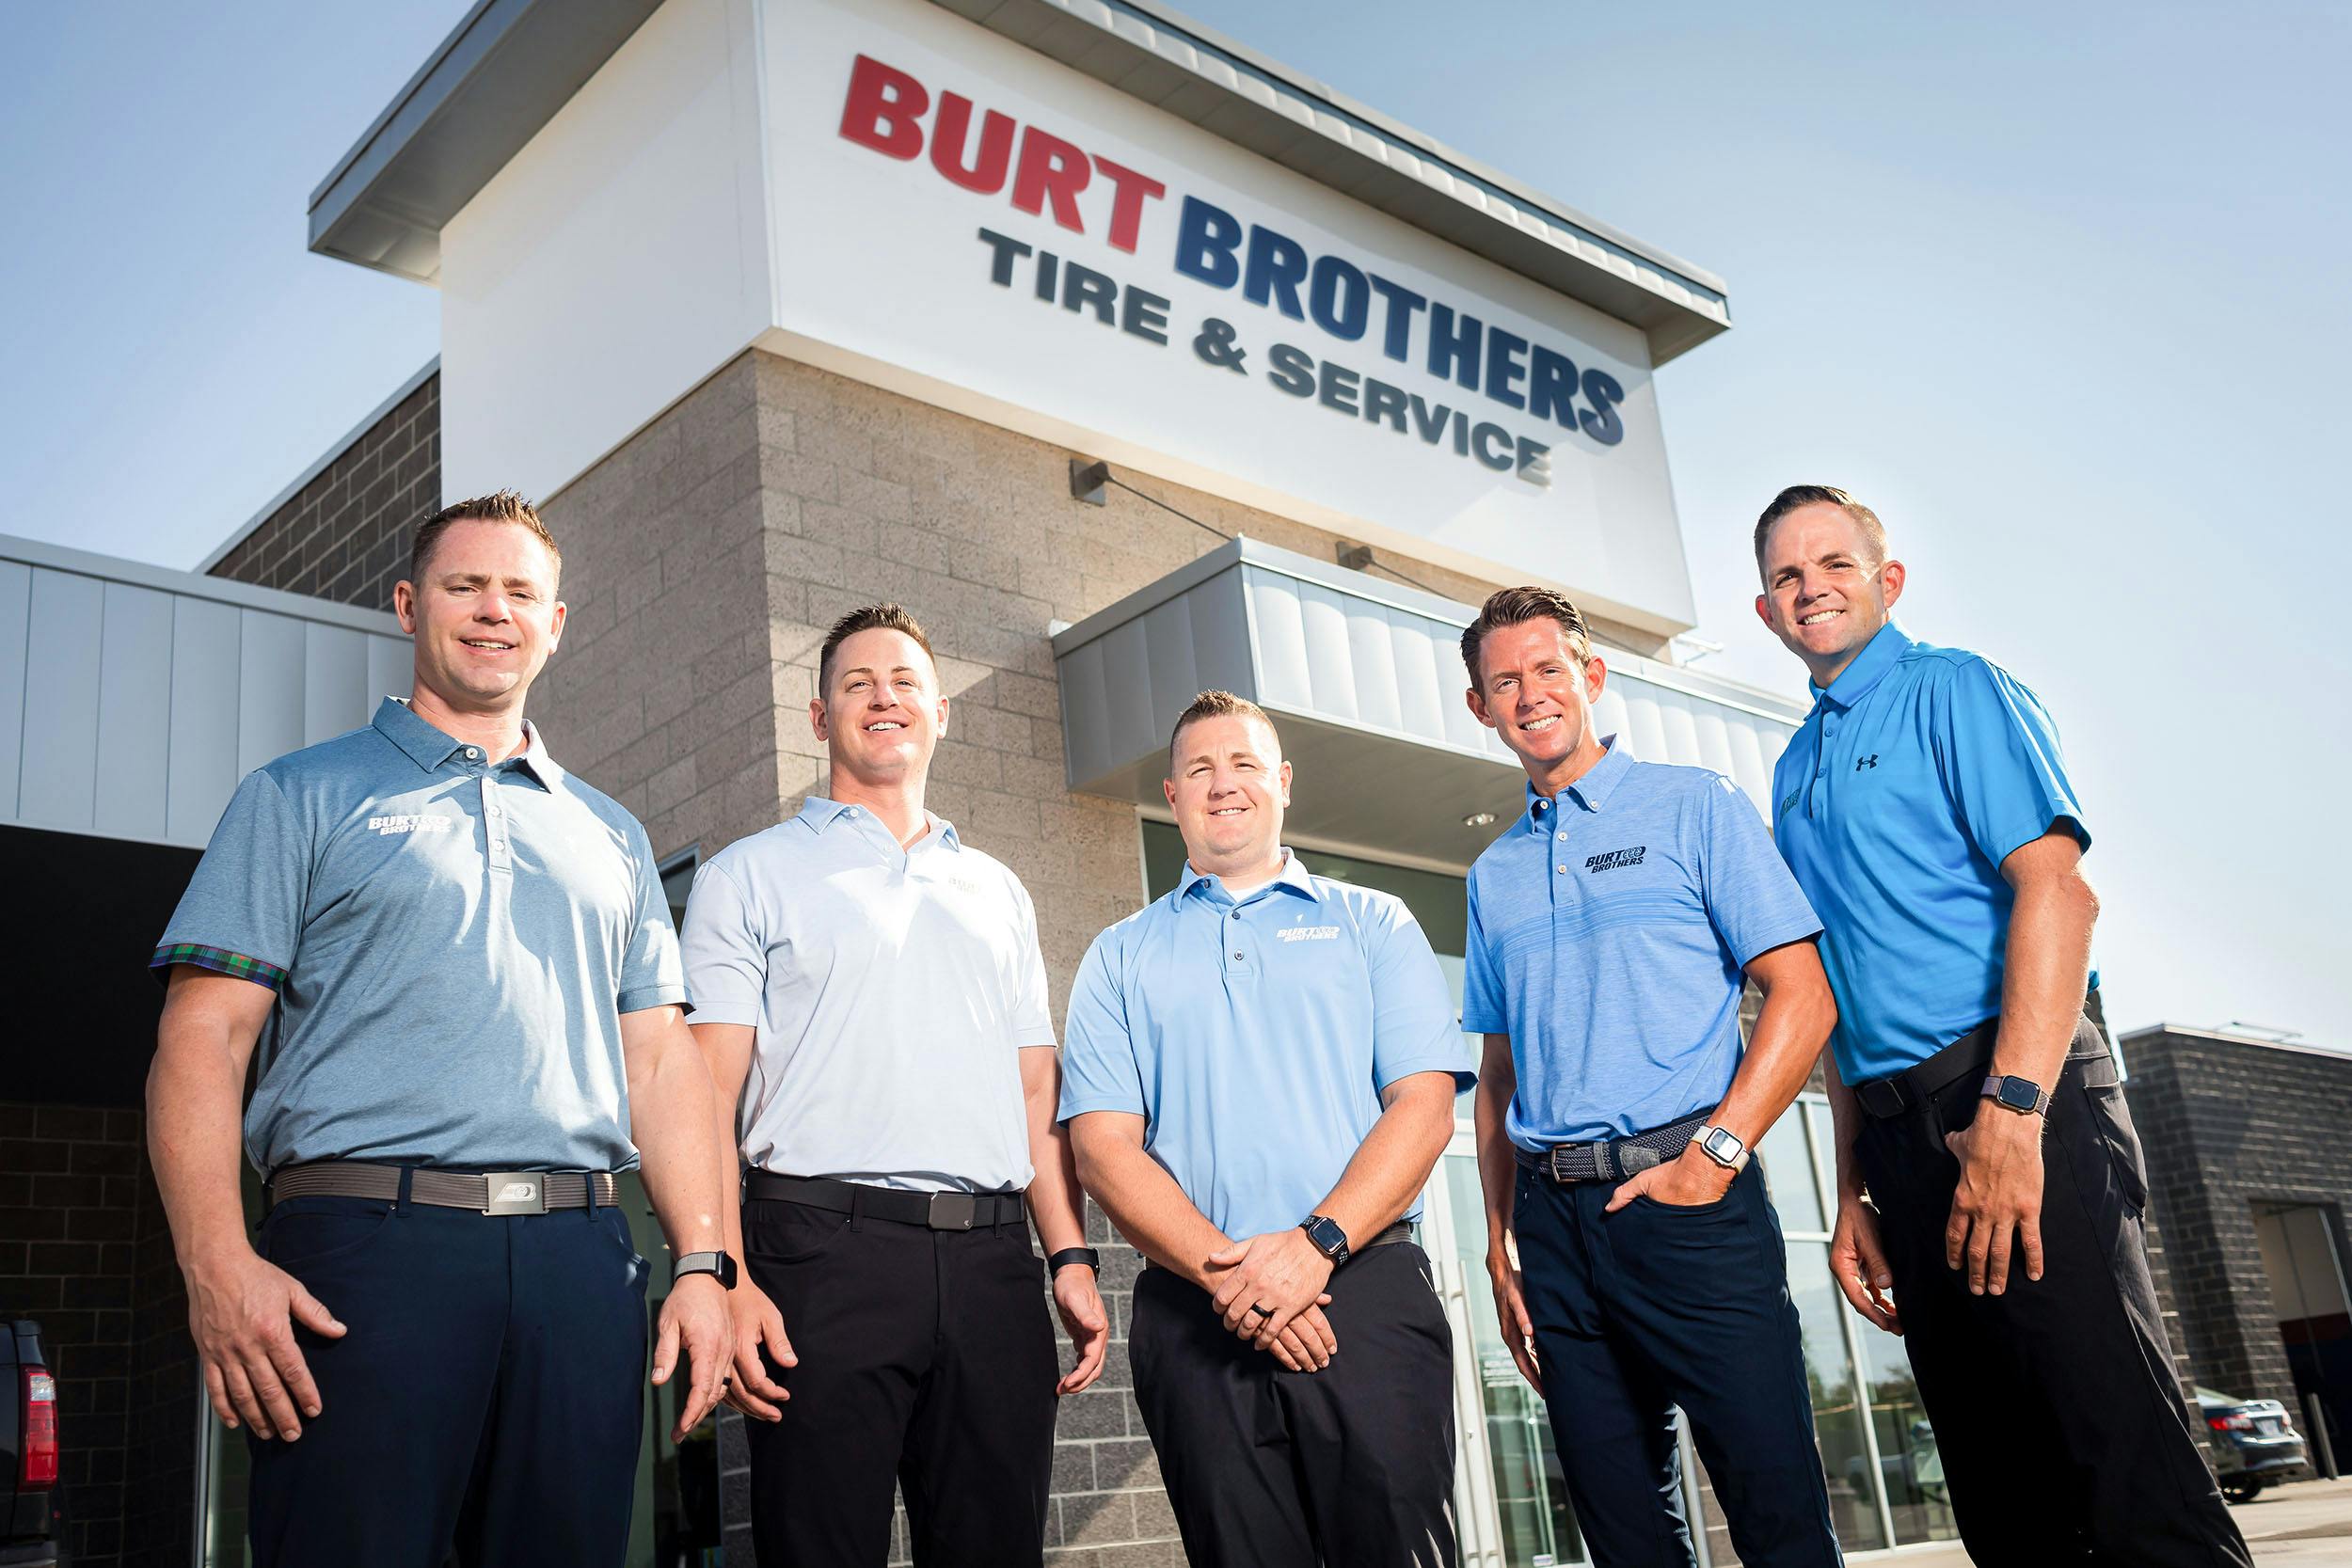 Burt Brothers Wins on Price & Service